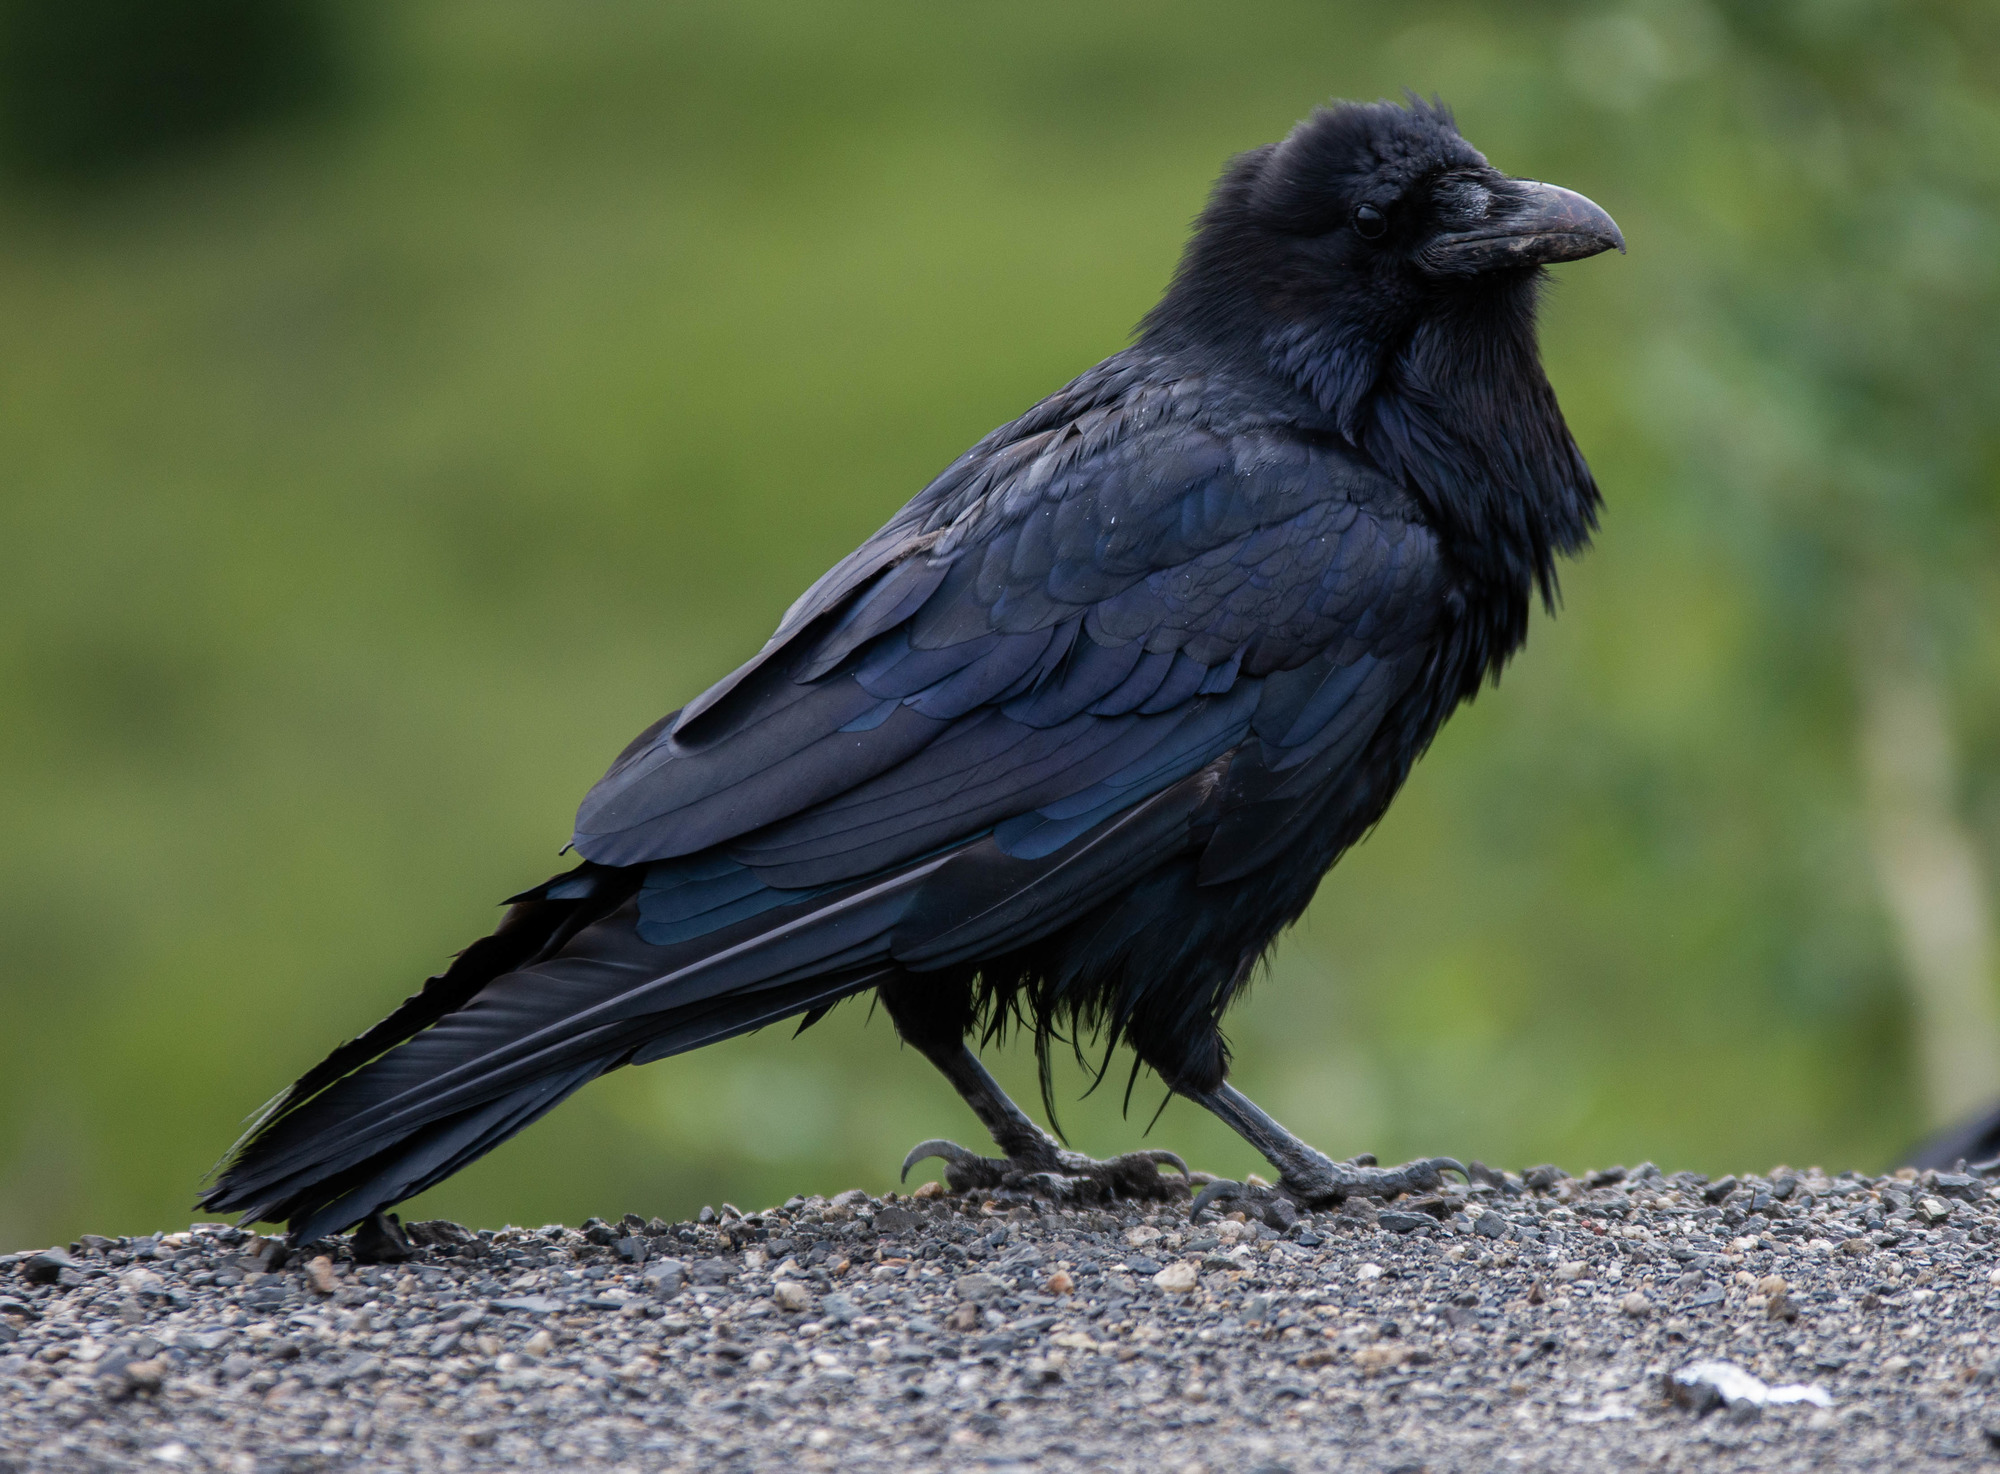 A raven 